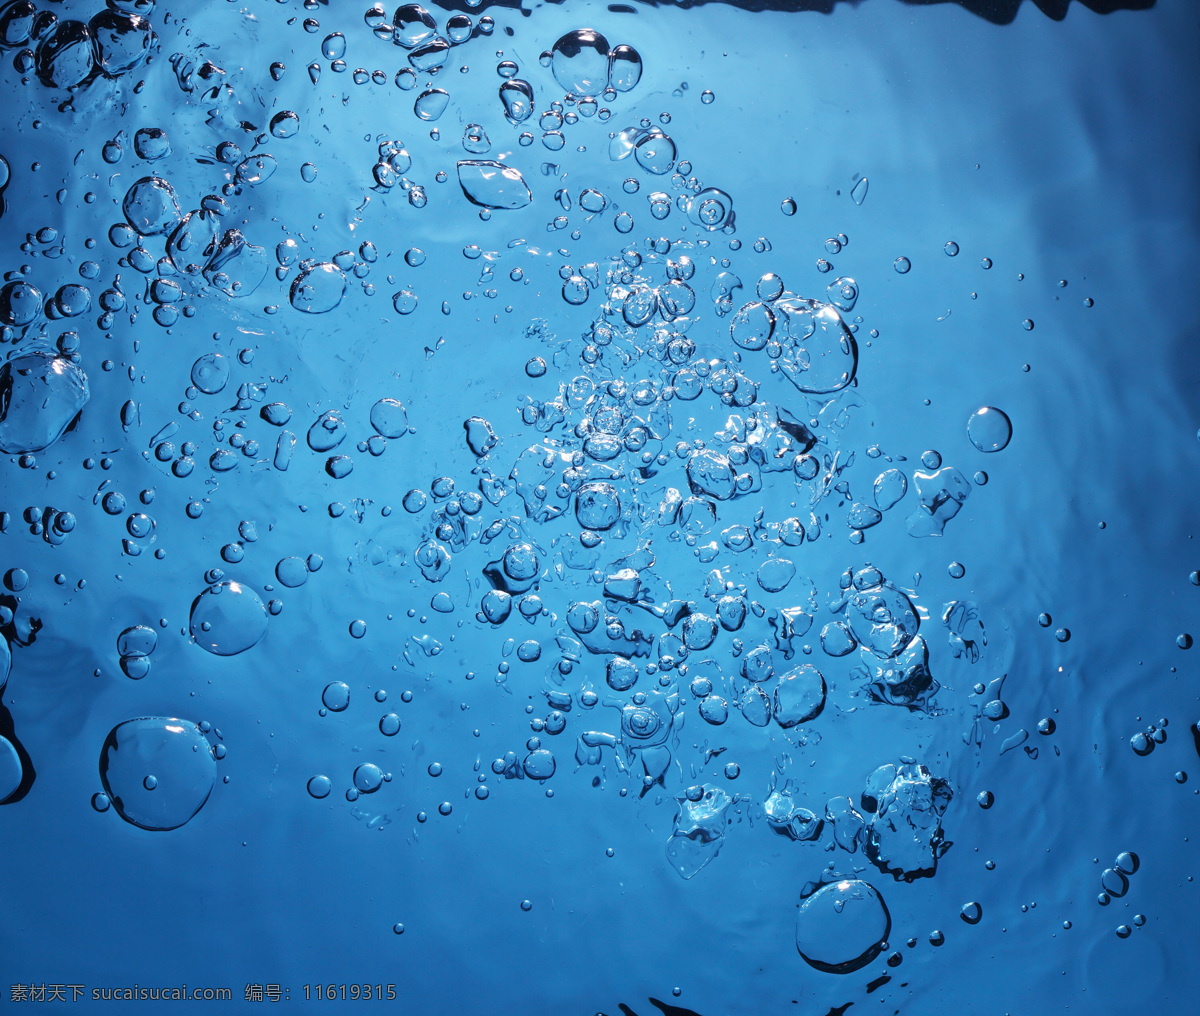 蓝色水泡背景 水浪 水 水纹 水波 水花 水主题 水元素 蓝色背景 冰水烈火 生活百科 蓝色